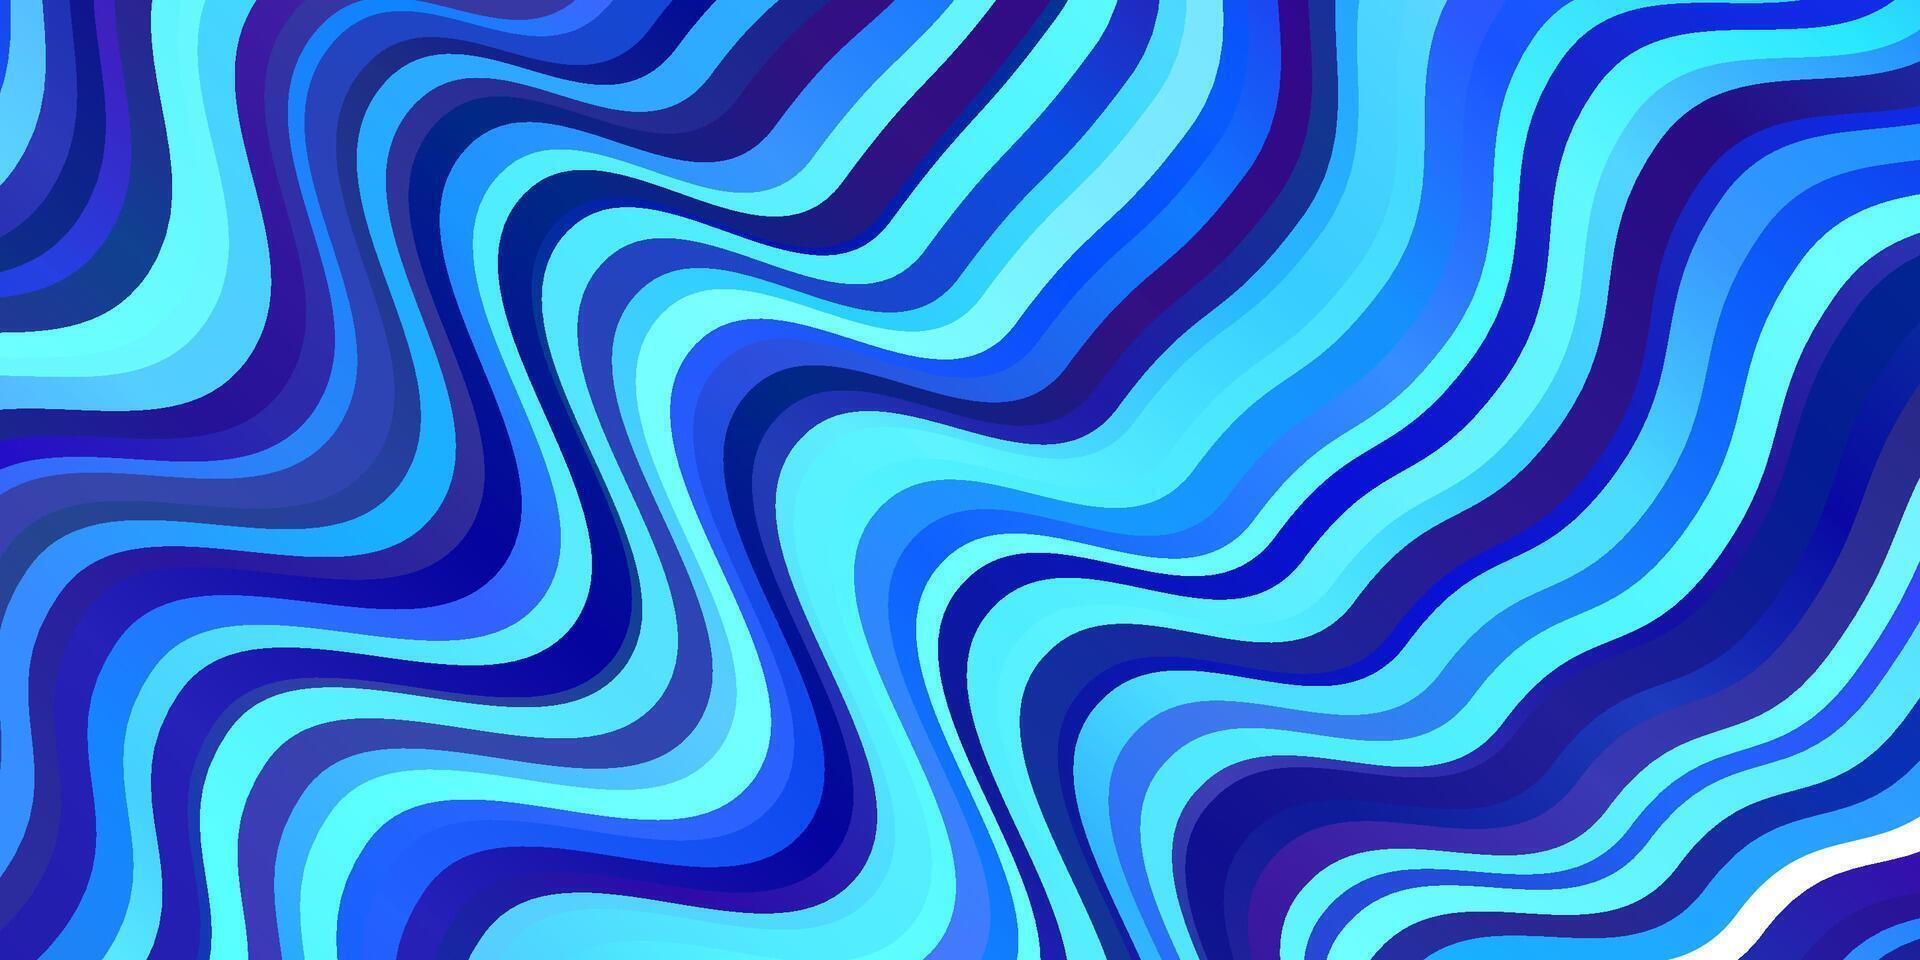 patrón de vector azul claro con líneas.